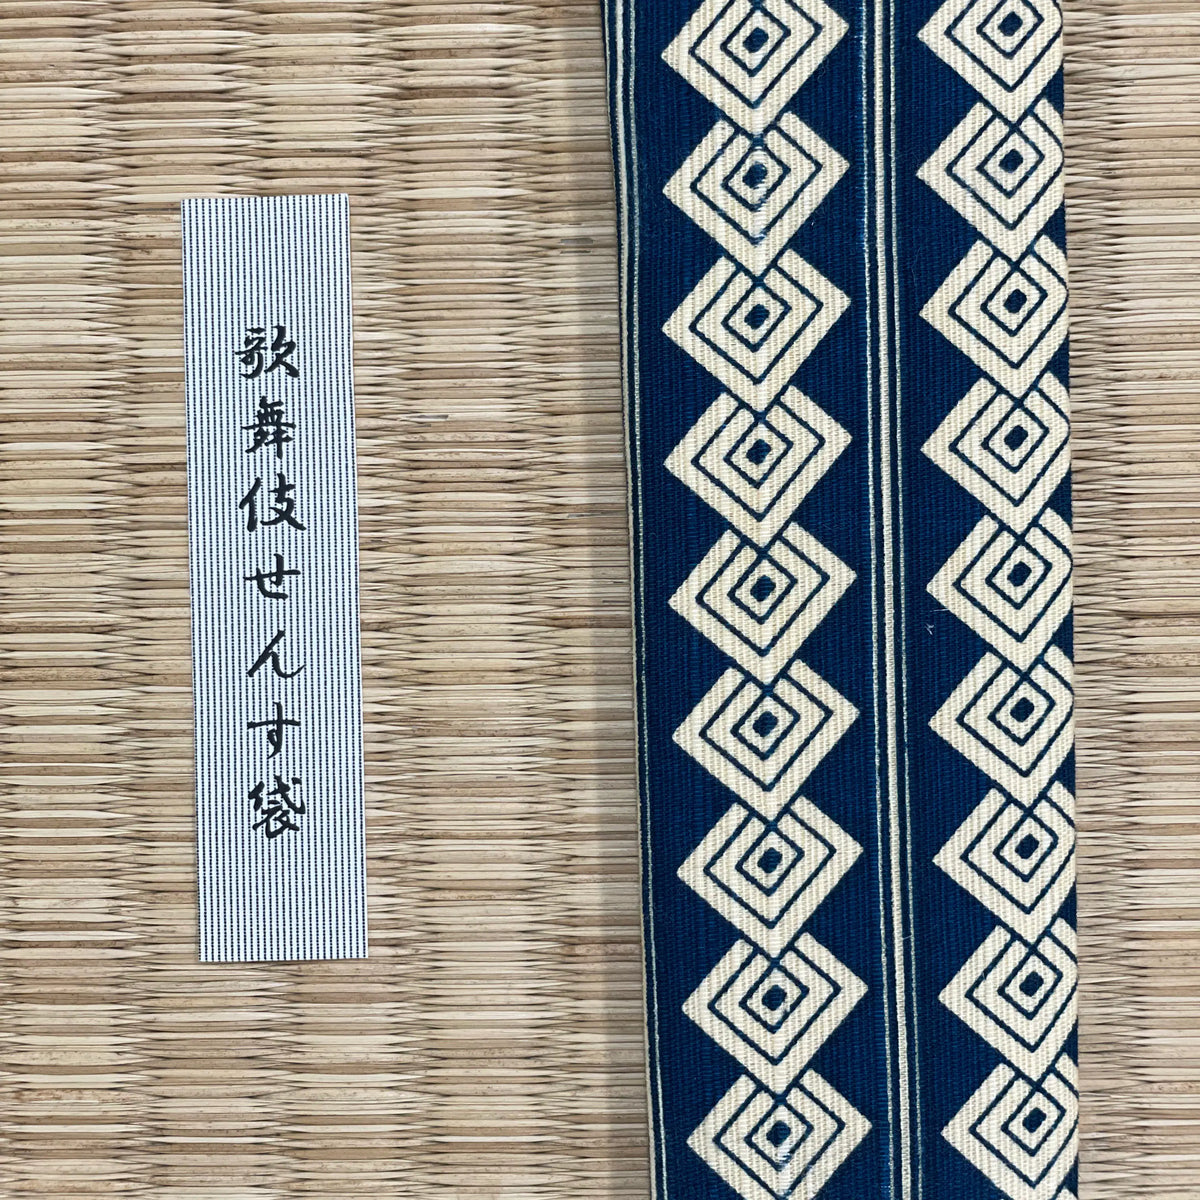 Kabuki Pattern Fan Bags, for 3 Masu 7.5 sun